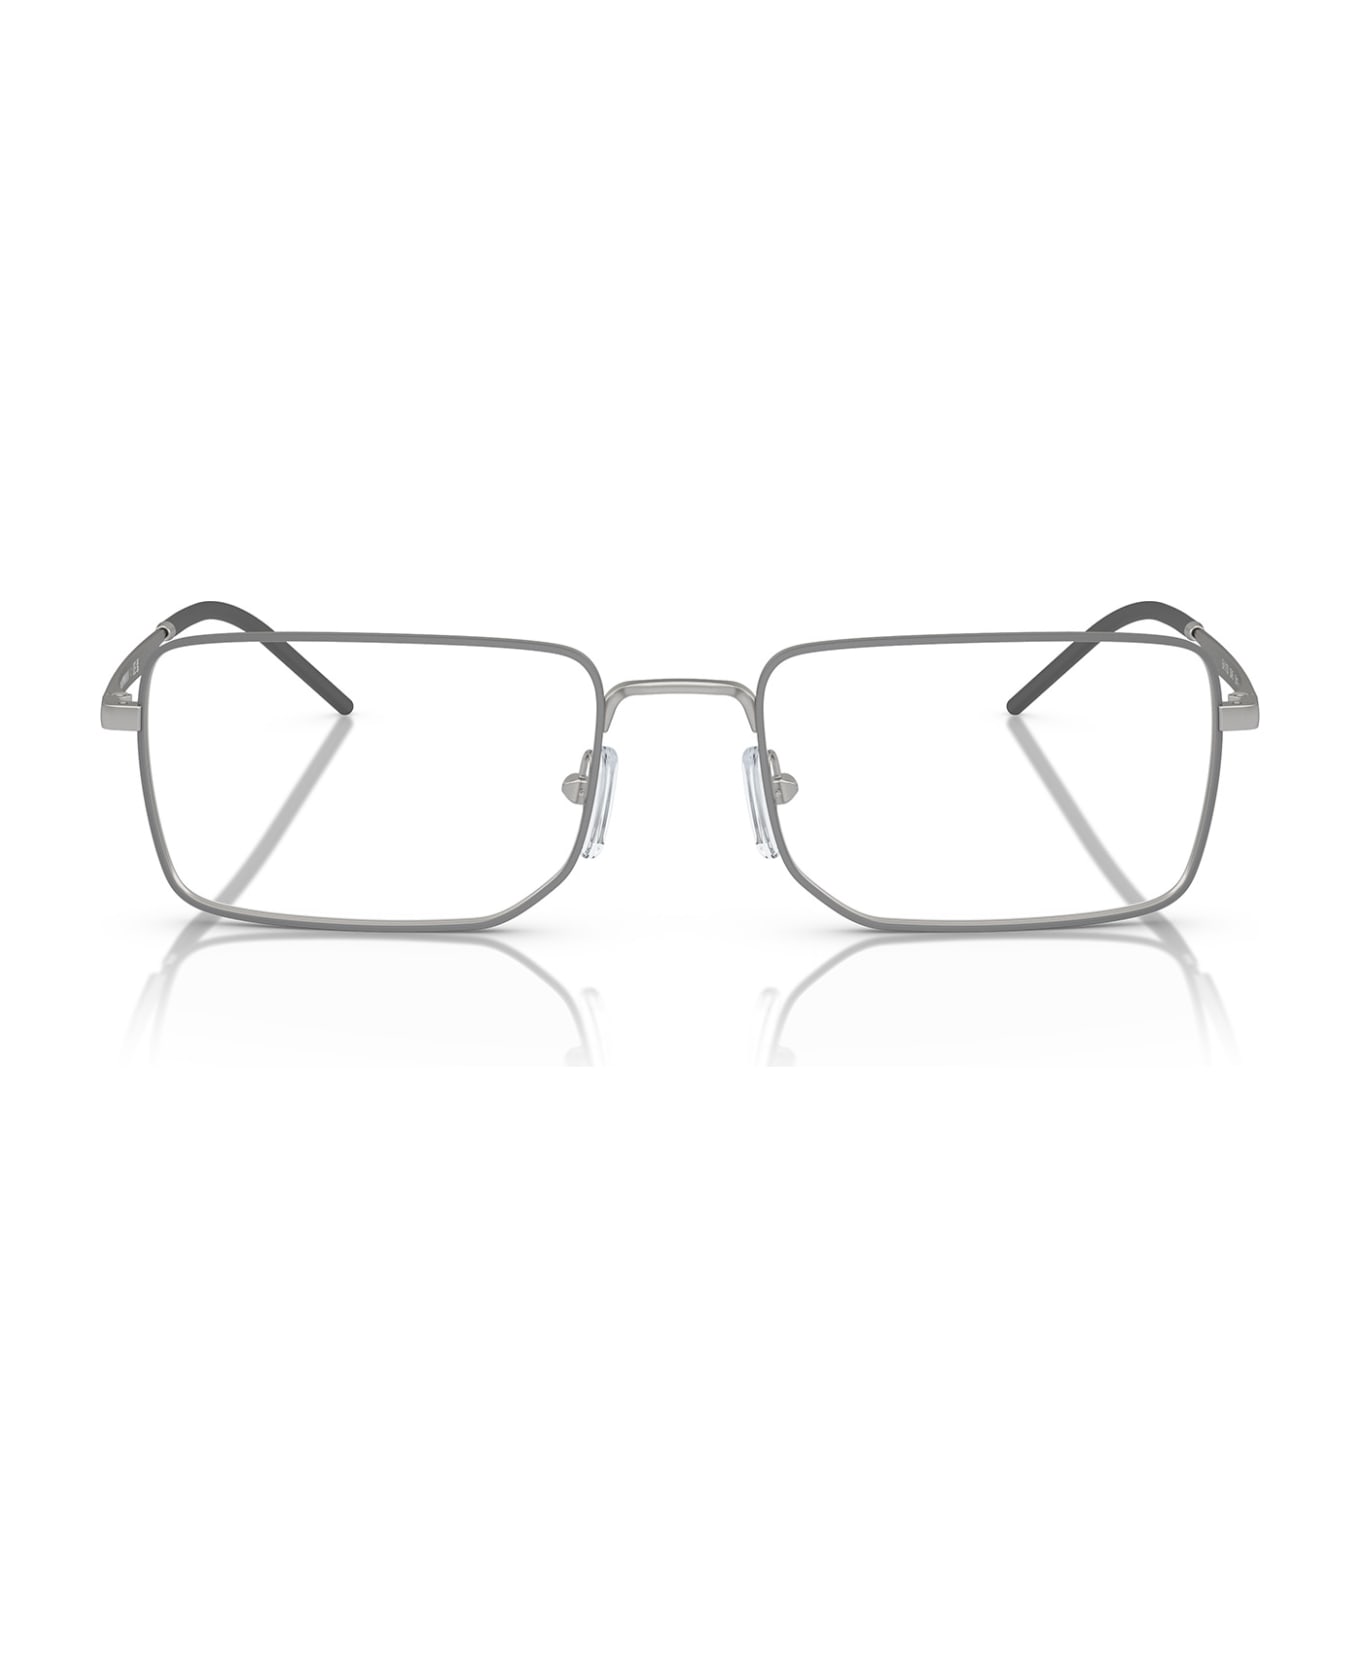 Emporio Armani Ea1153 Matte Silver Glasses - Matte Silver